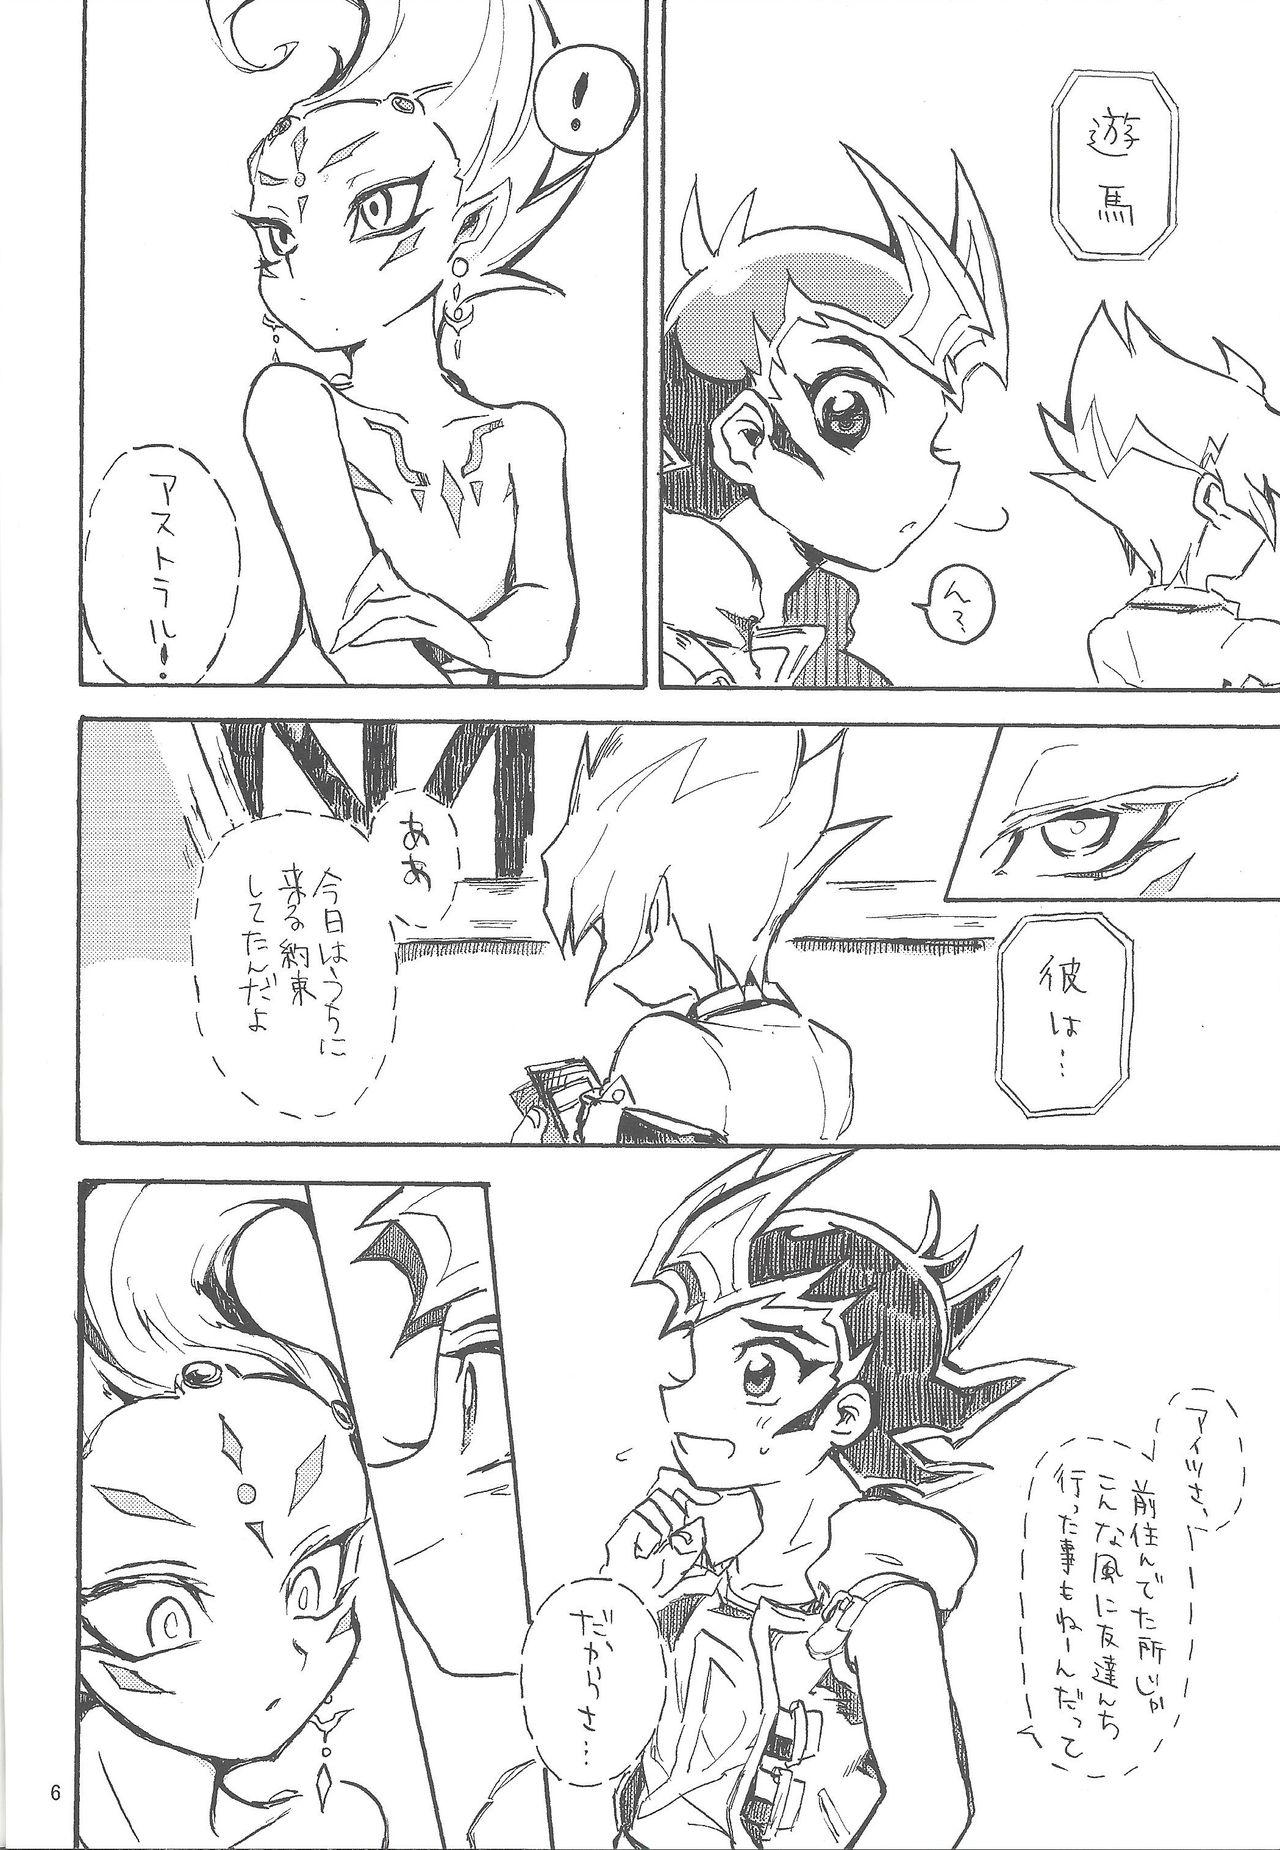 Threesome Mihitsu ni koi. - Yu-gi-oh zexal Ex Gf - Page 7